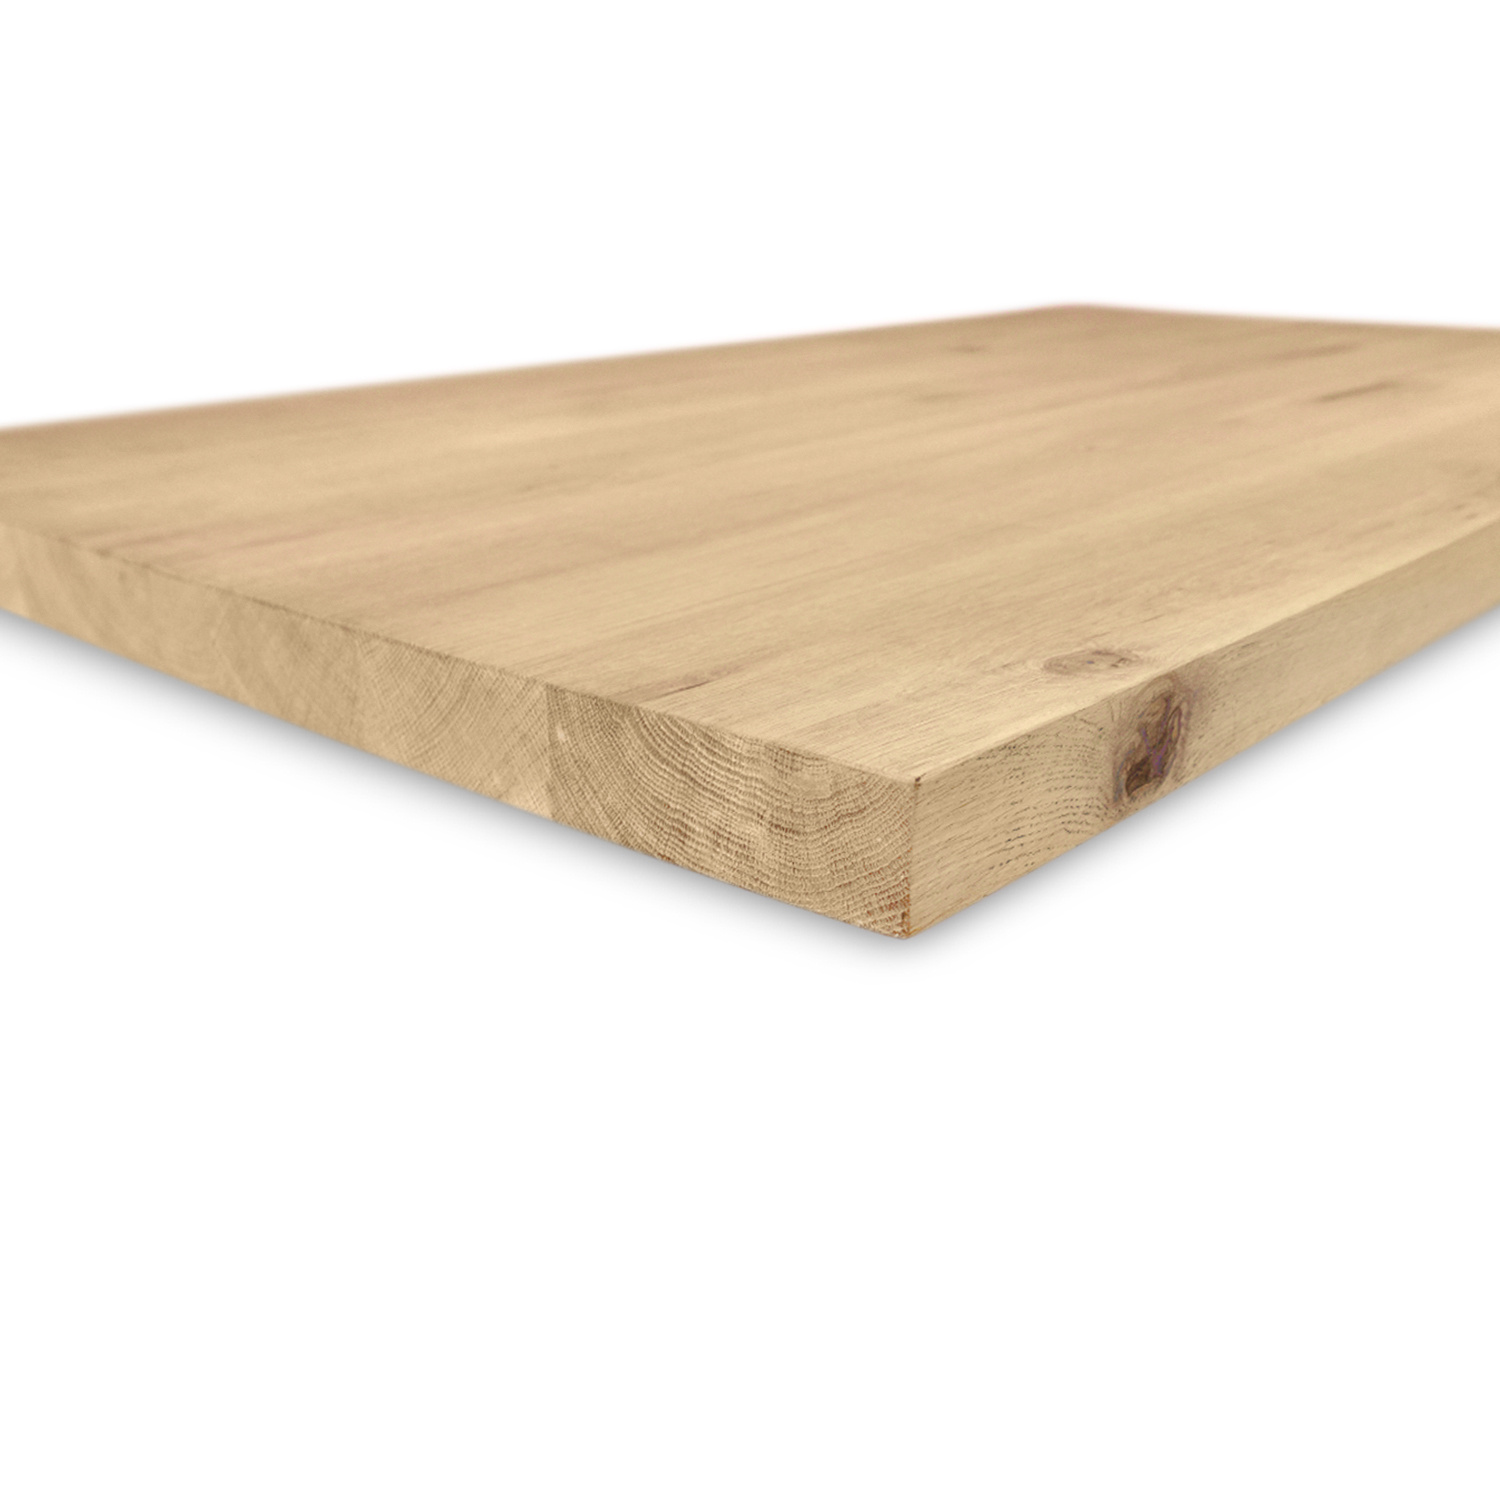  Eiken tafelblad op maat - 3 cm dik (1-laag) - extra rustiek Europees eikenhout - met extra brede lamellen (circa 14-20 cm) - verlijmd kd 8-12% - 40-117x80-300 cm